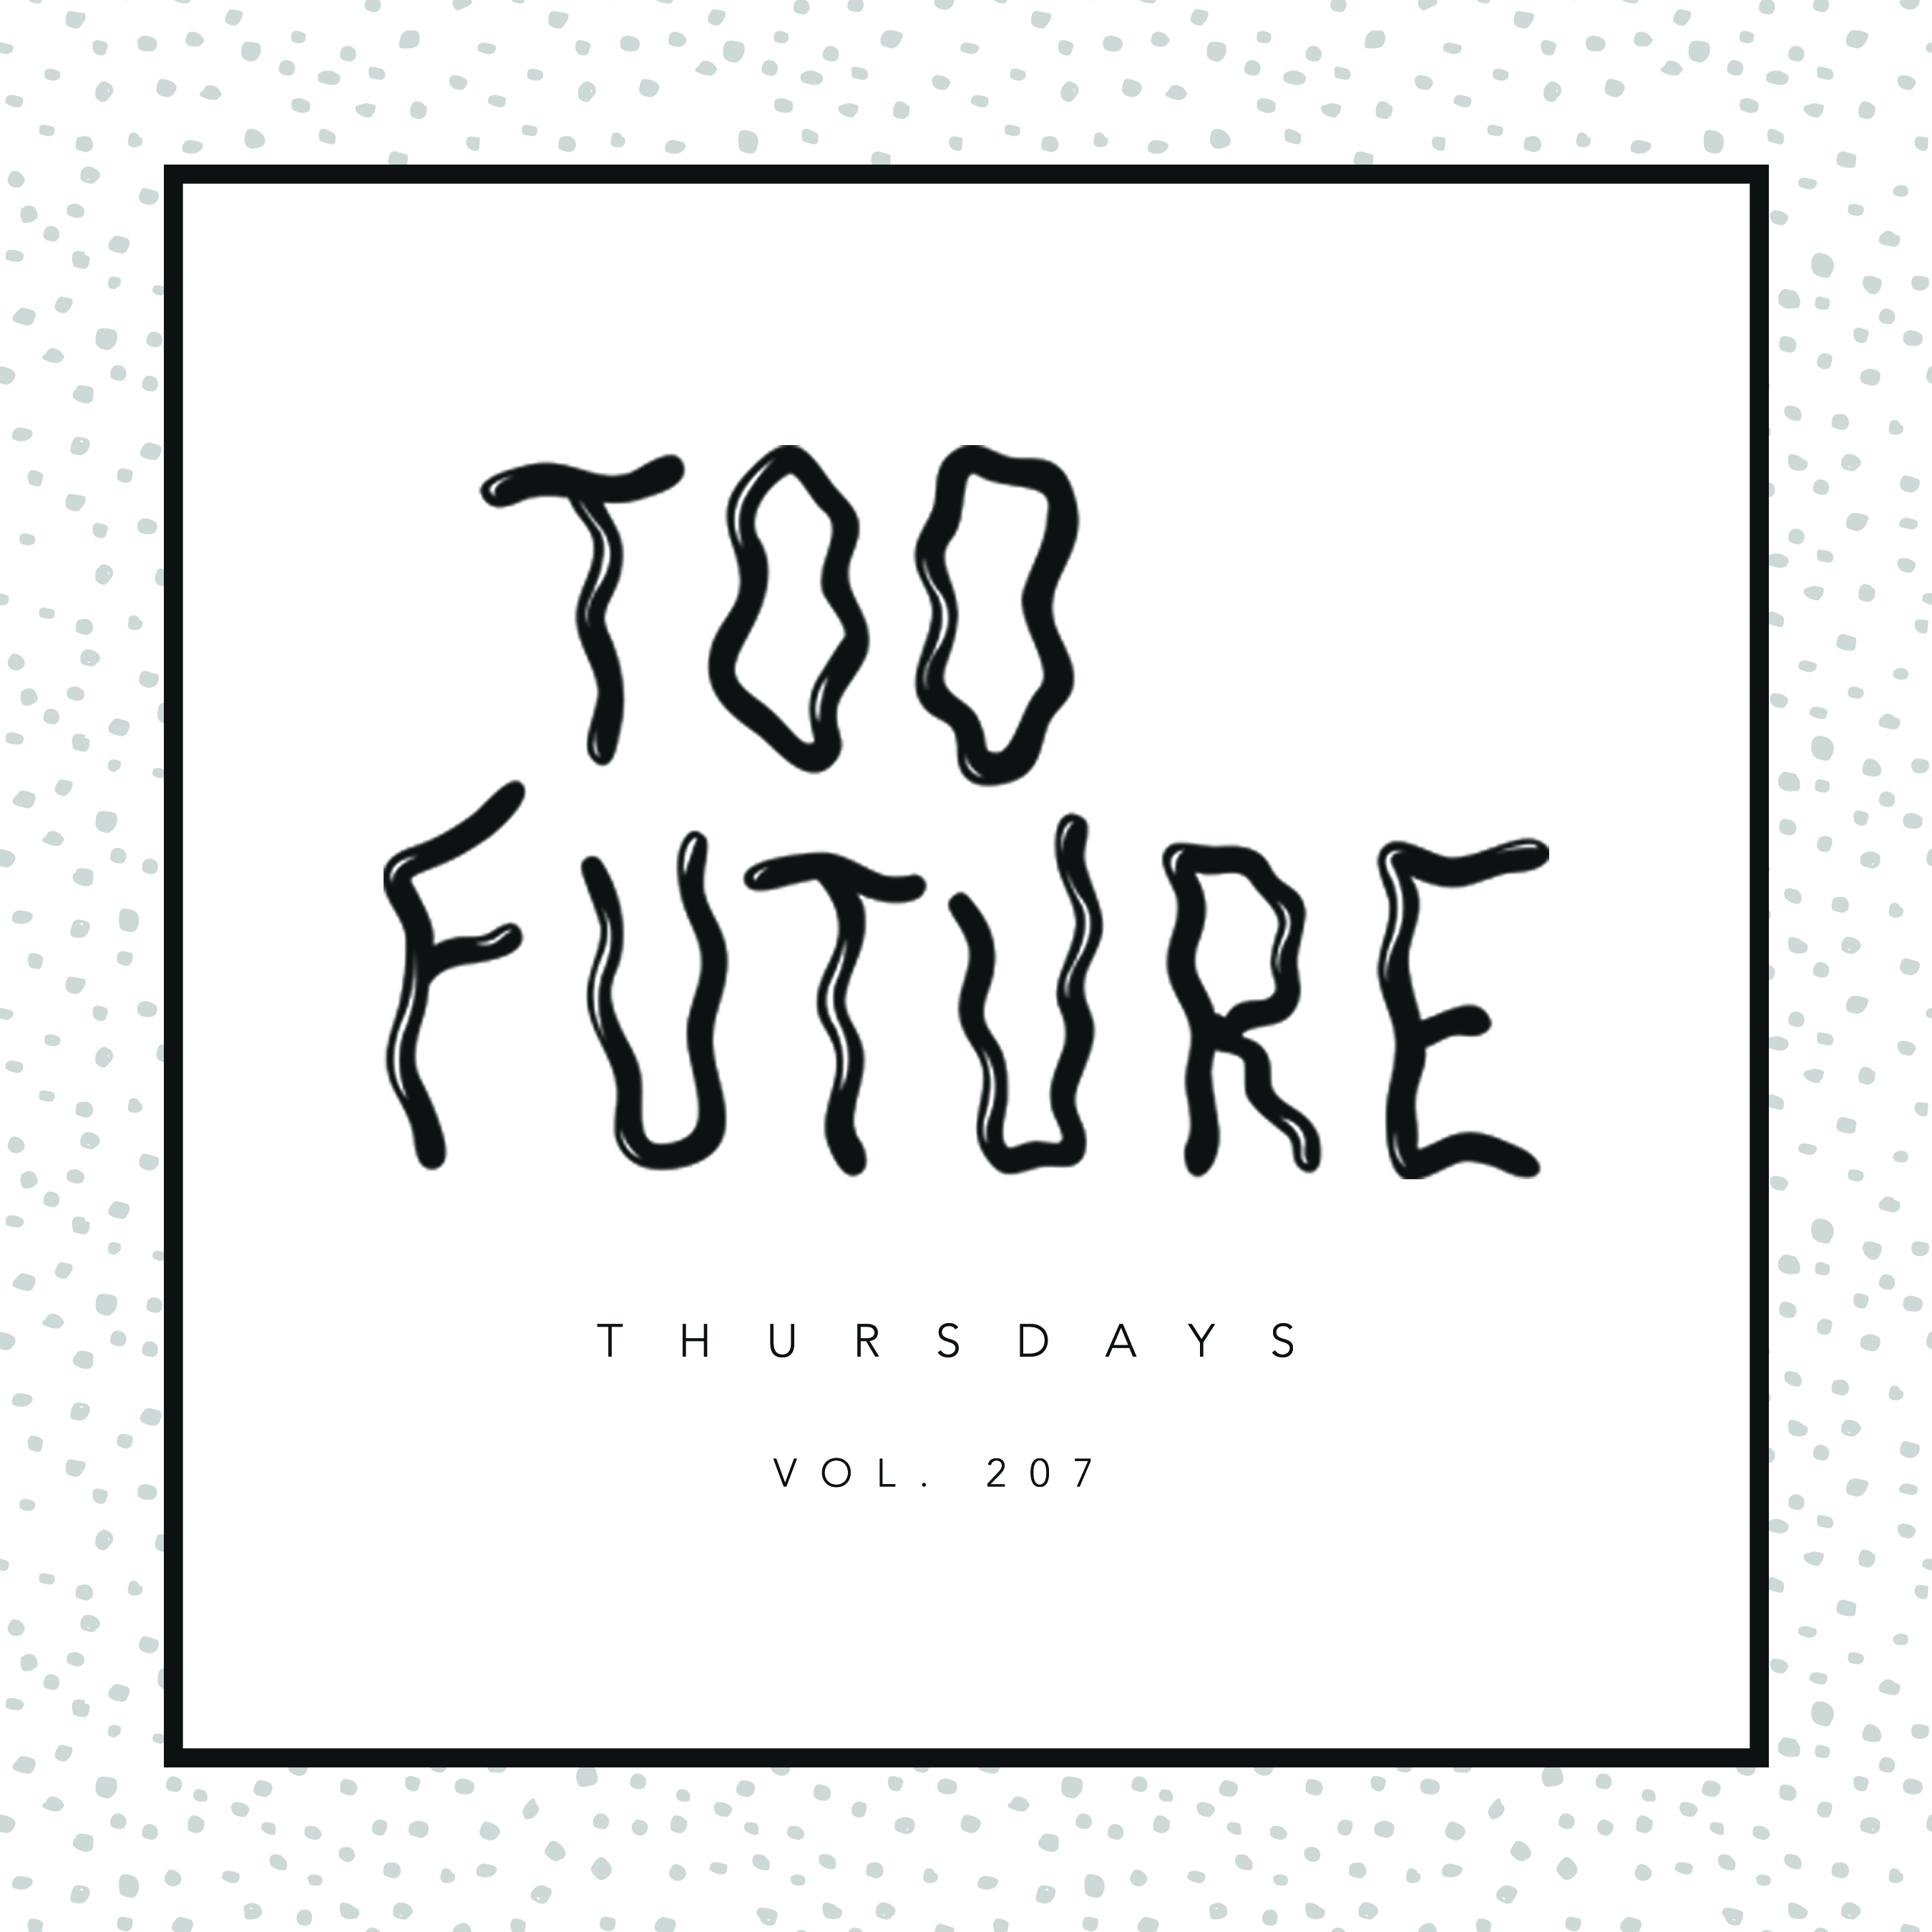 too-future-thursdays-vol-207